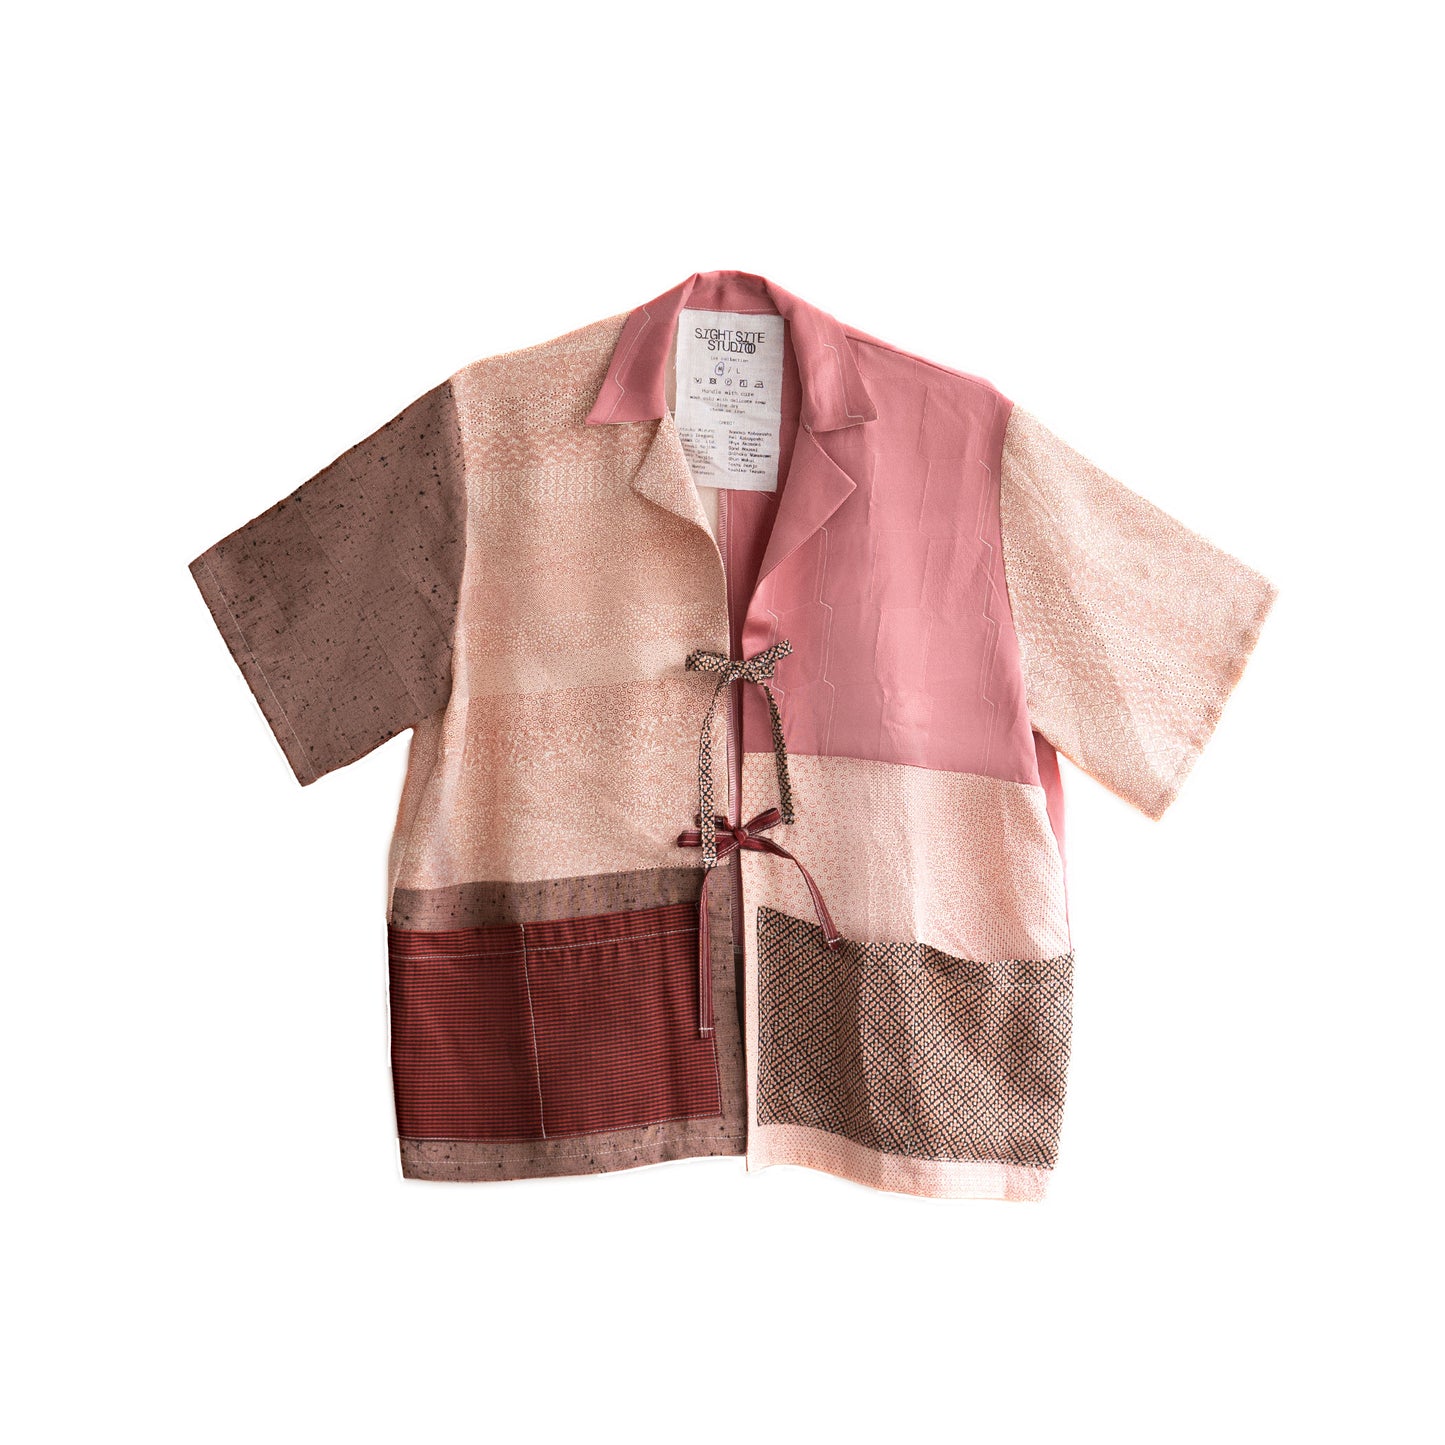 Kimono Working Shirts - Pink 01 M